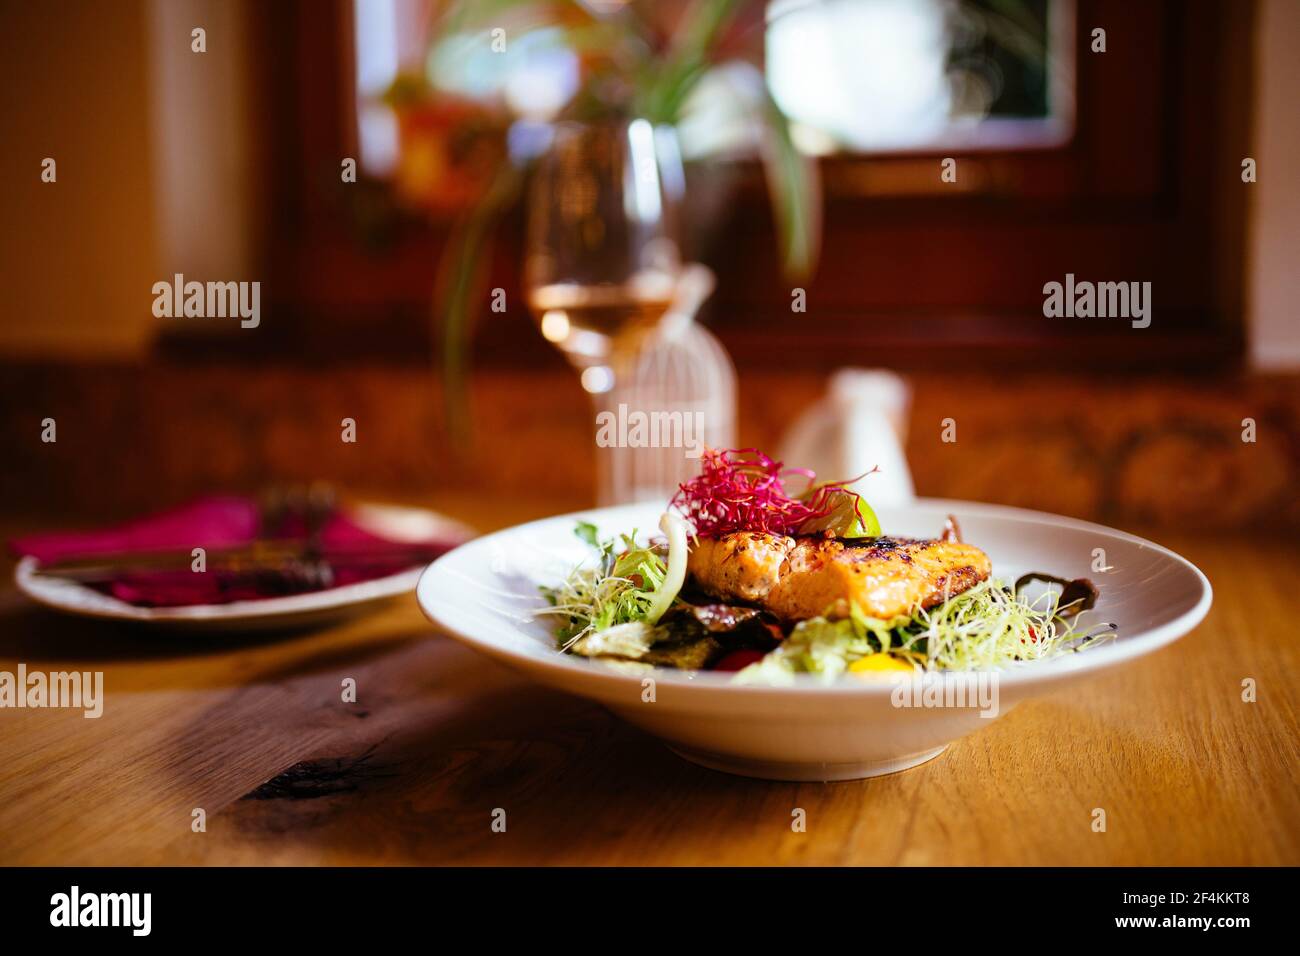 Cibo del ristorante con ingredienti freschi - salmone alla griglia e fresco insalata nel ristorante di lusso con un bicchiere di vino e posate Foto Stock